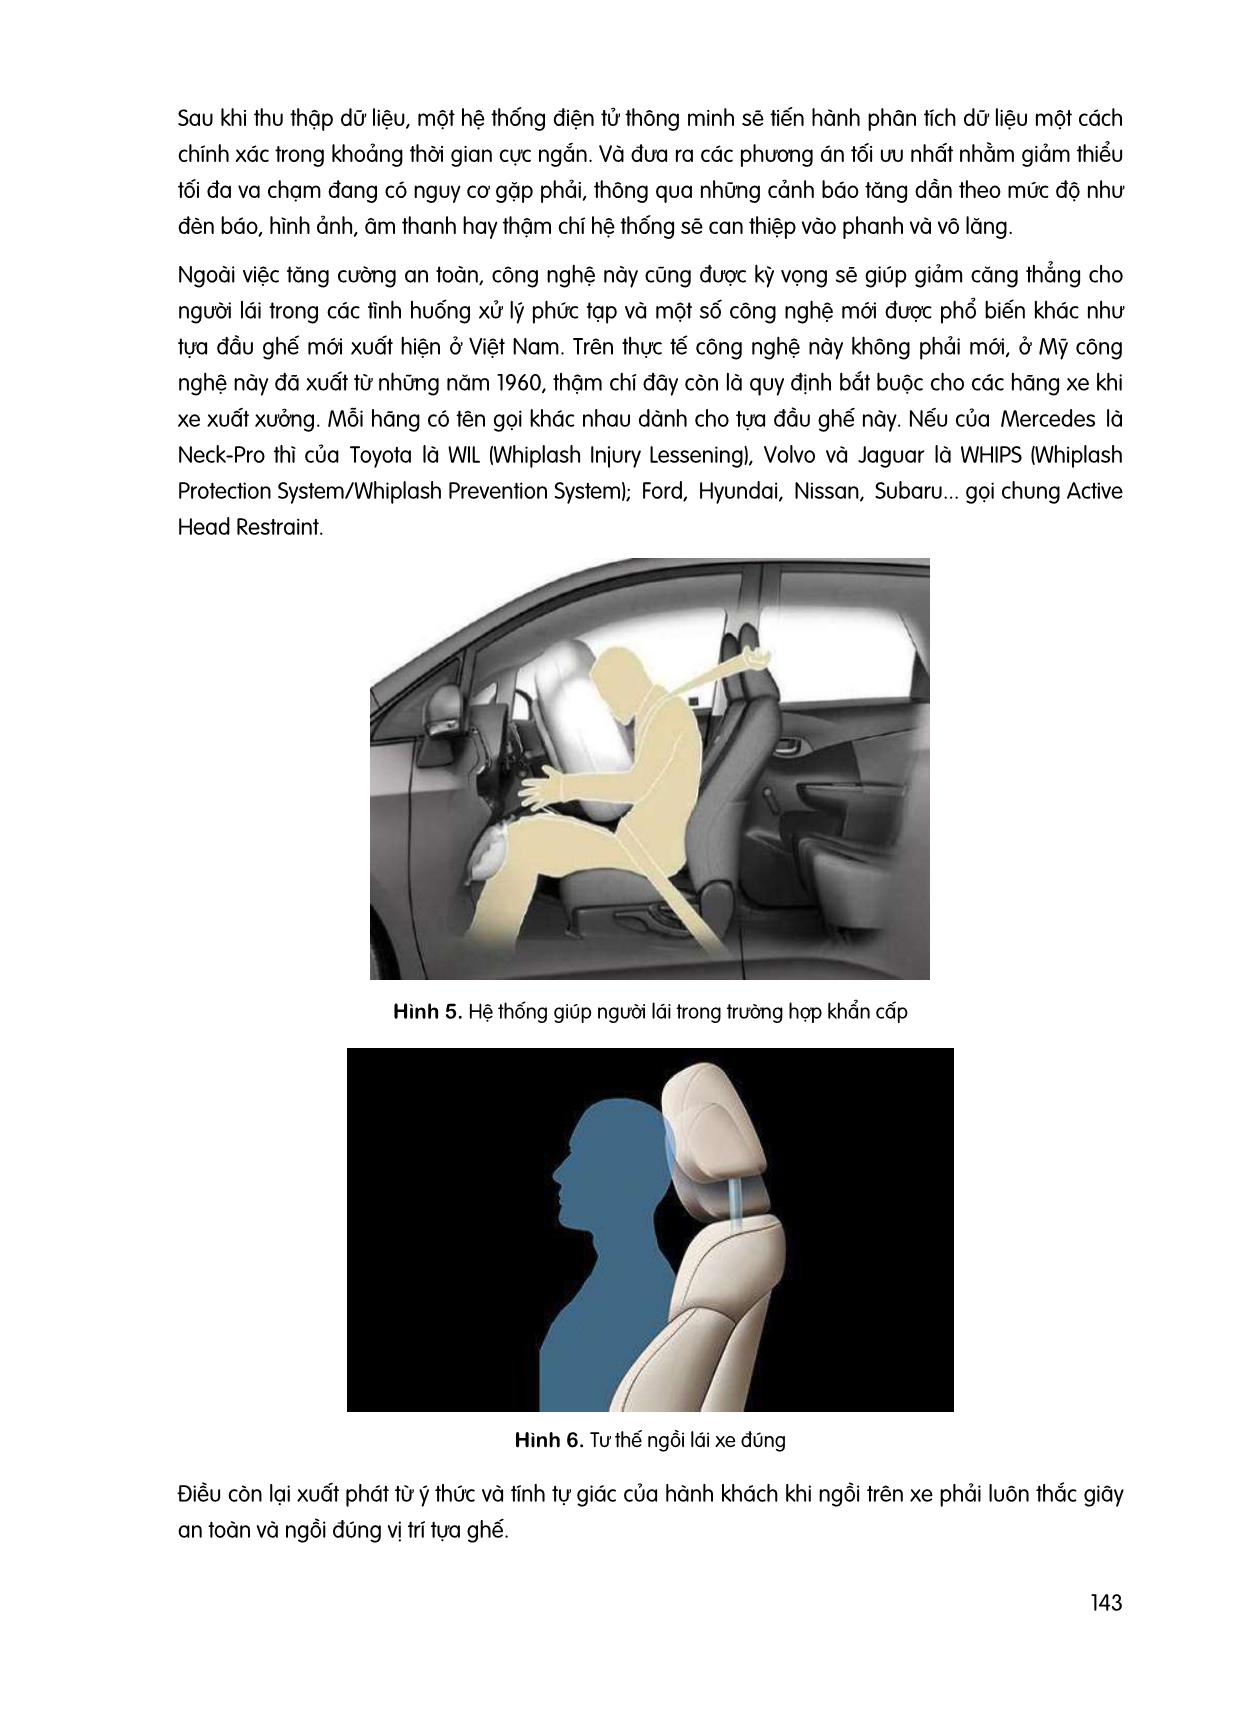 Khảo sát các trường hợp va chạm ô tô từ phía sau và đề xuất phương án nâng cao độ an toàn cho hành khách trang 5